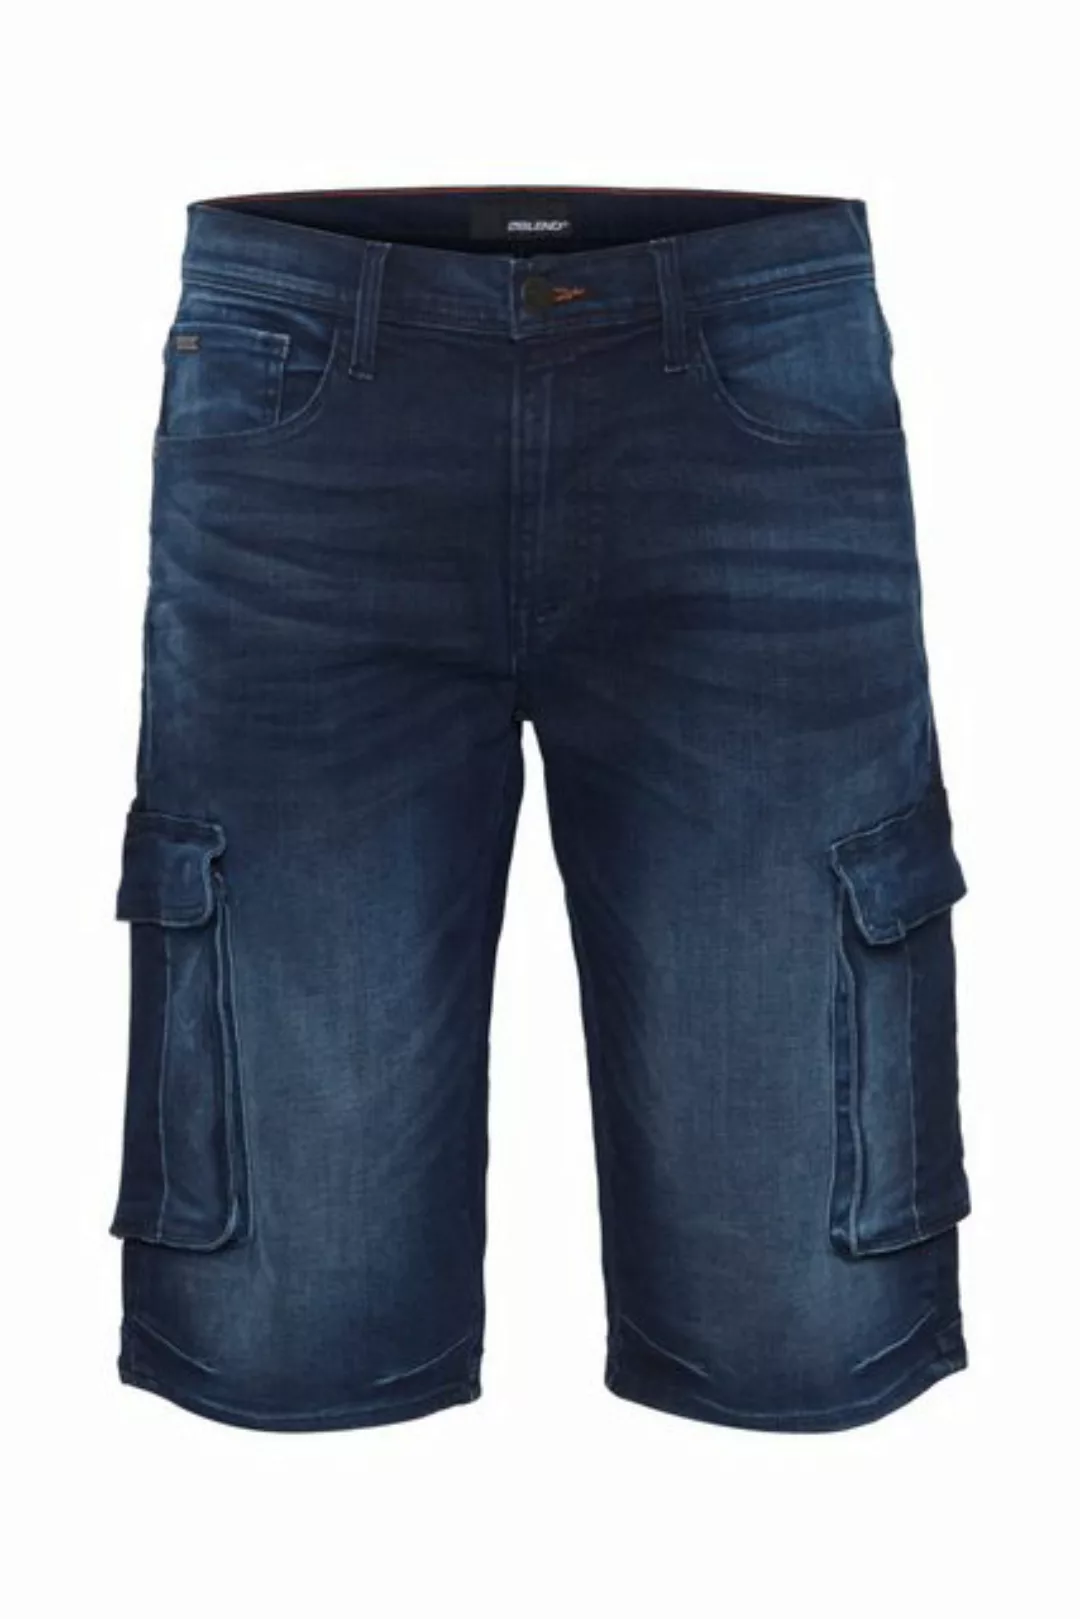 Blend 5-Pocket-Jeans BLEND JEANS TWISTER CARGO SHORTS dark blue 20713329.20 günstig online kaufen